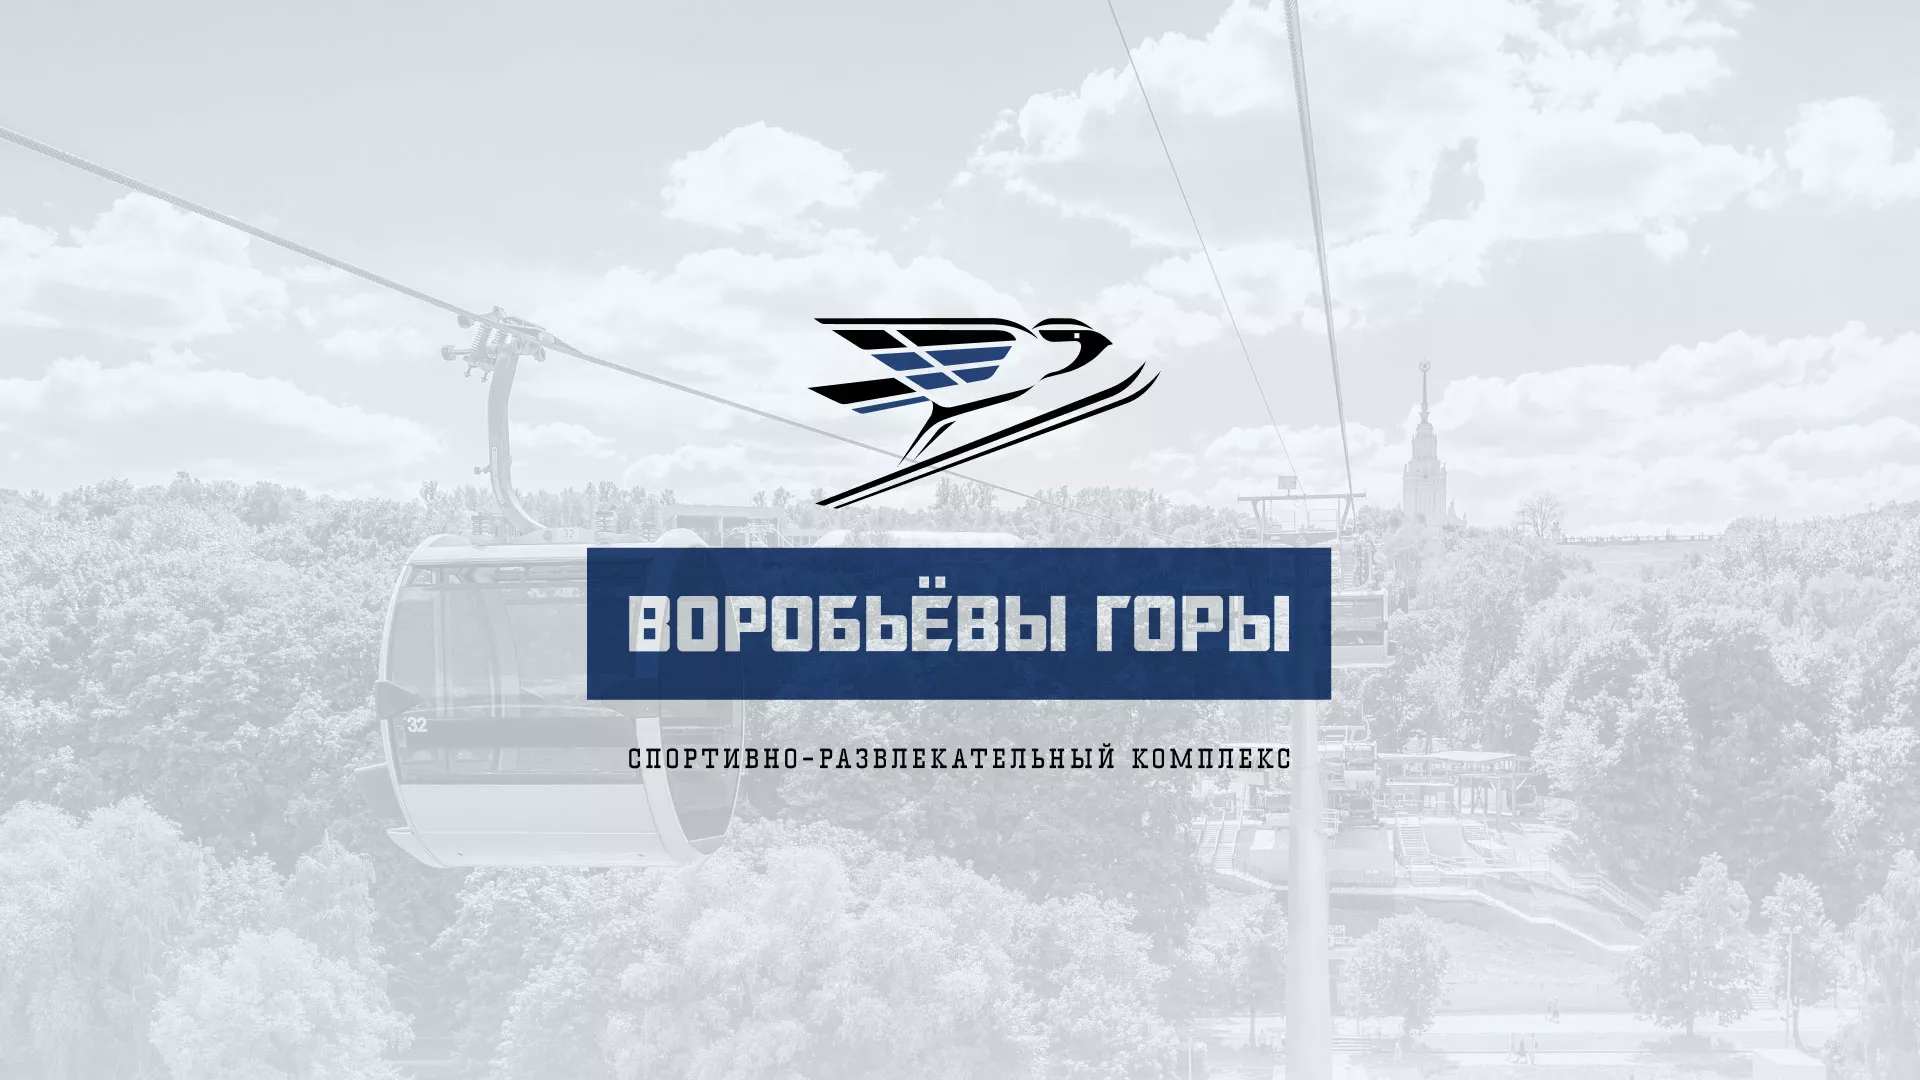 Разработка сайта в Якутске для спортивно-развлекательного комплекса «Воробьёвы горы»